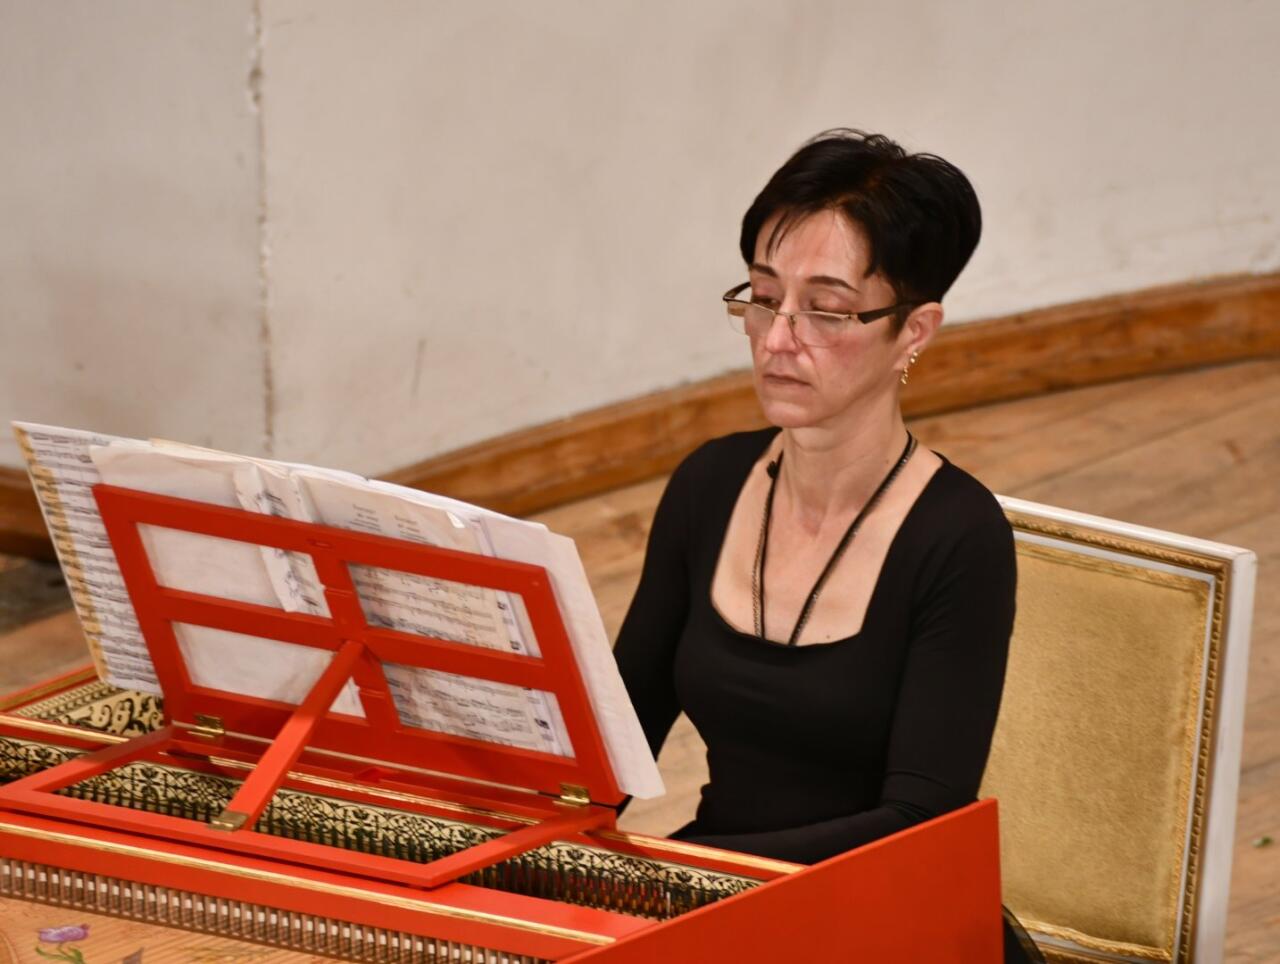 Гармония и красота: как звучит клавесин в Баку